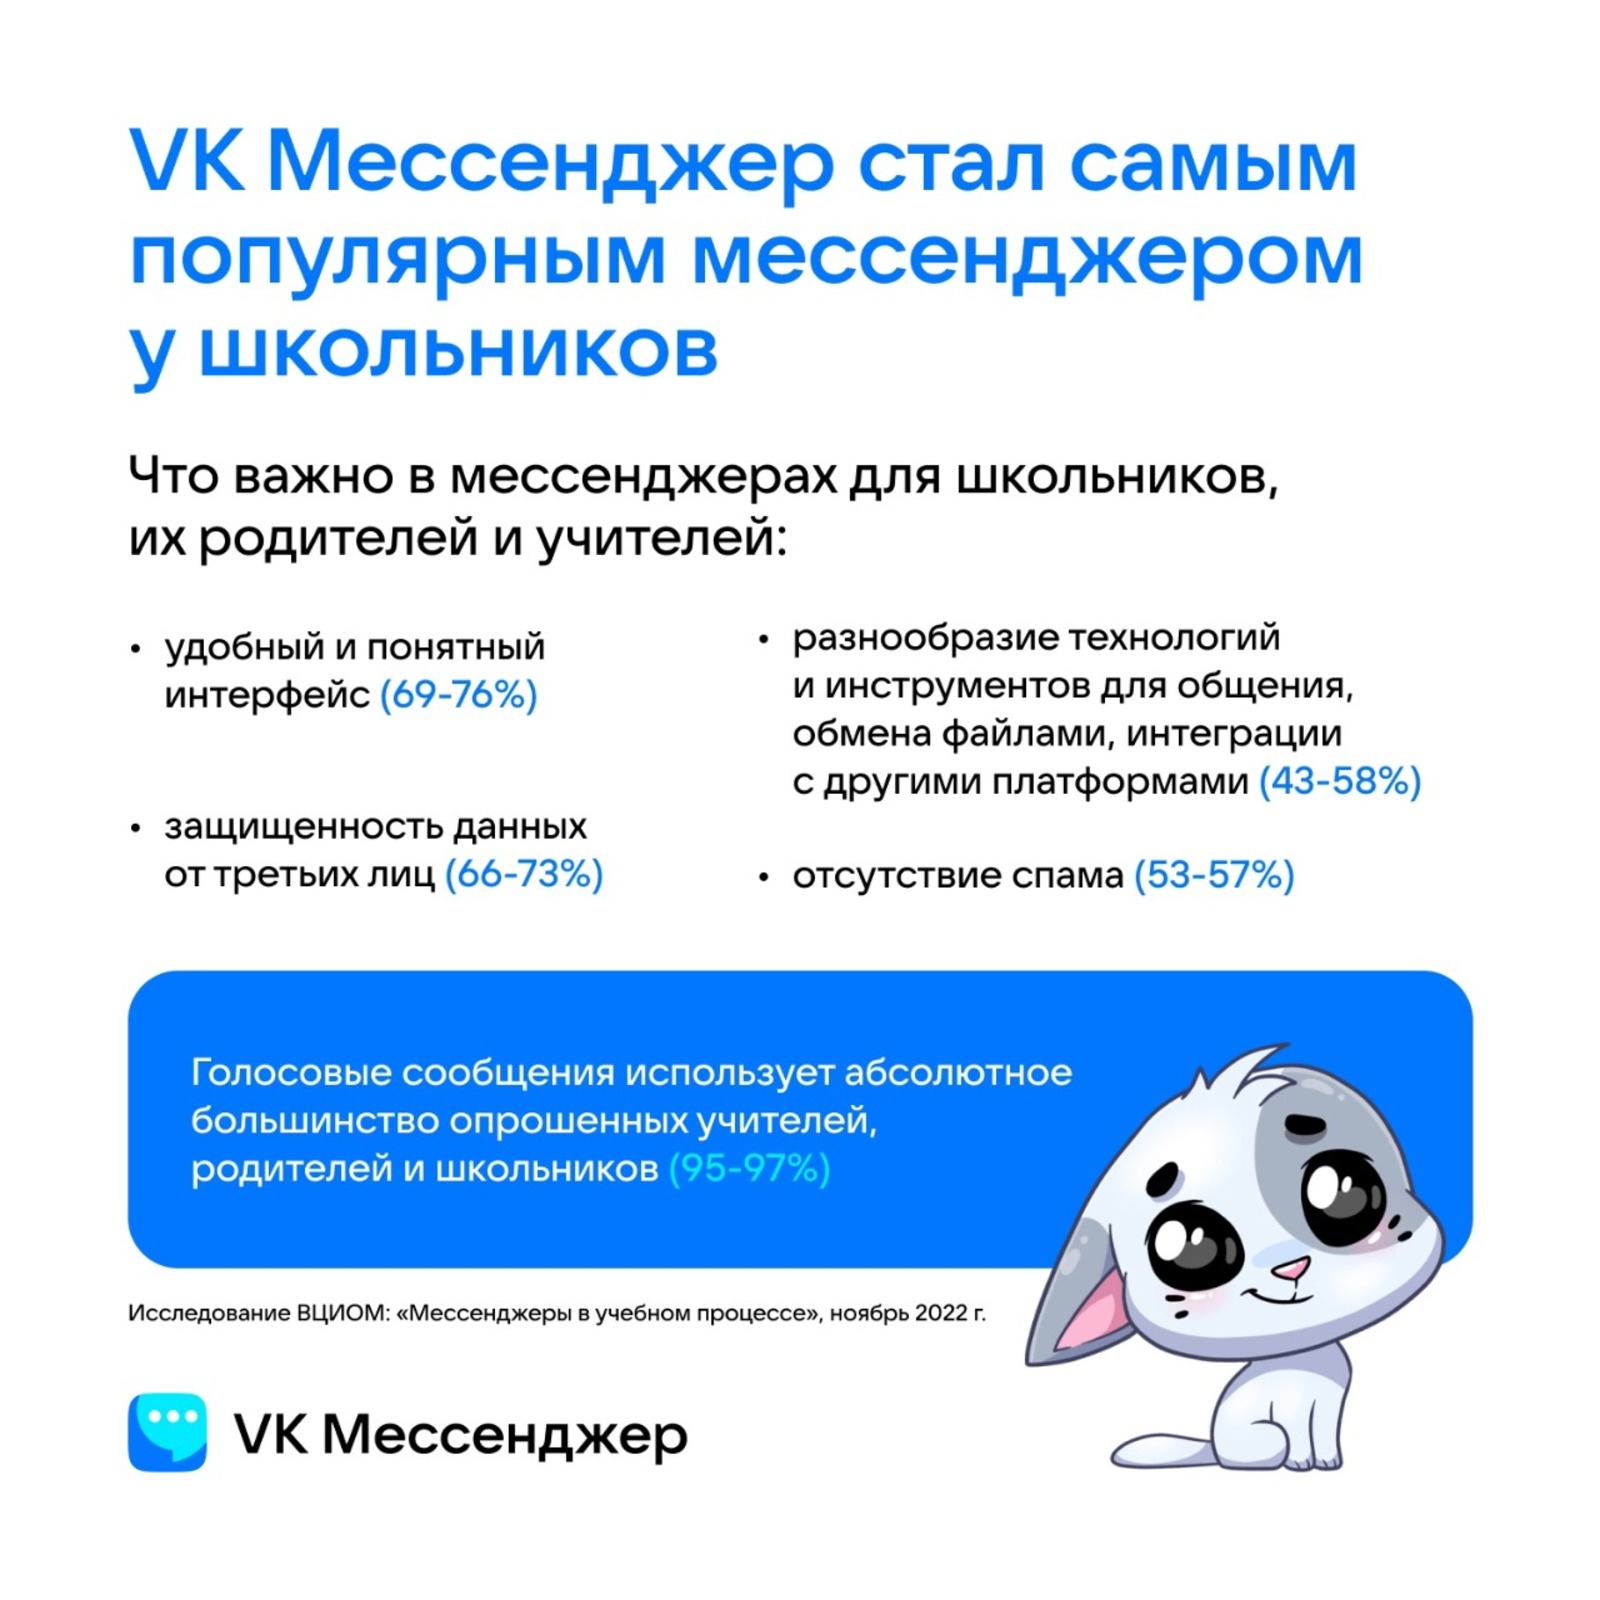 ВКонтакте признана самыми популярным мессенджером по результатам опрошенных